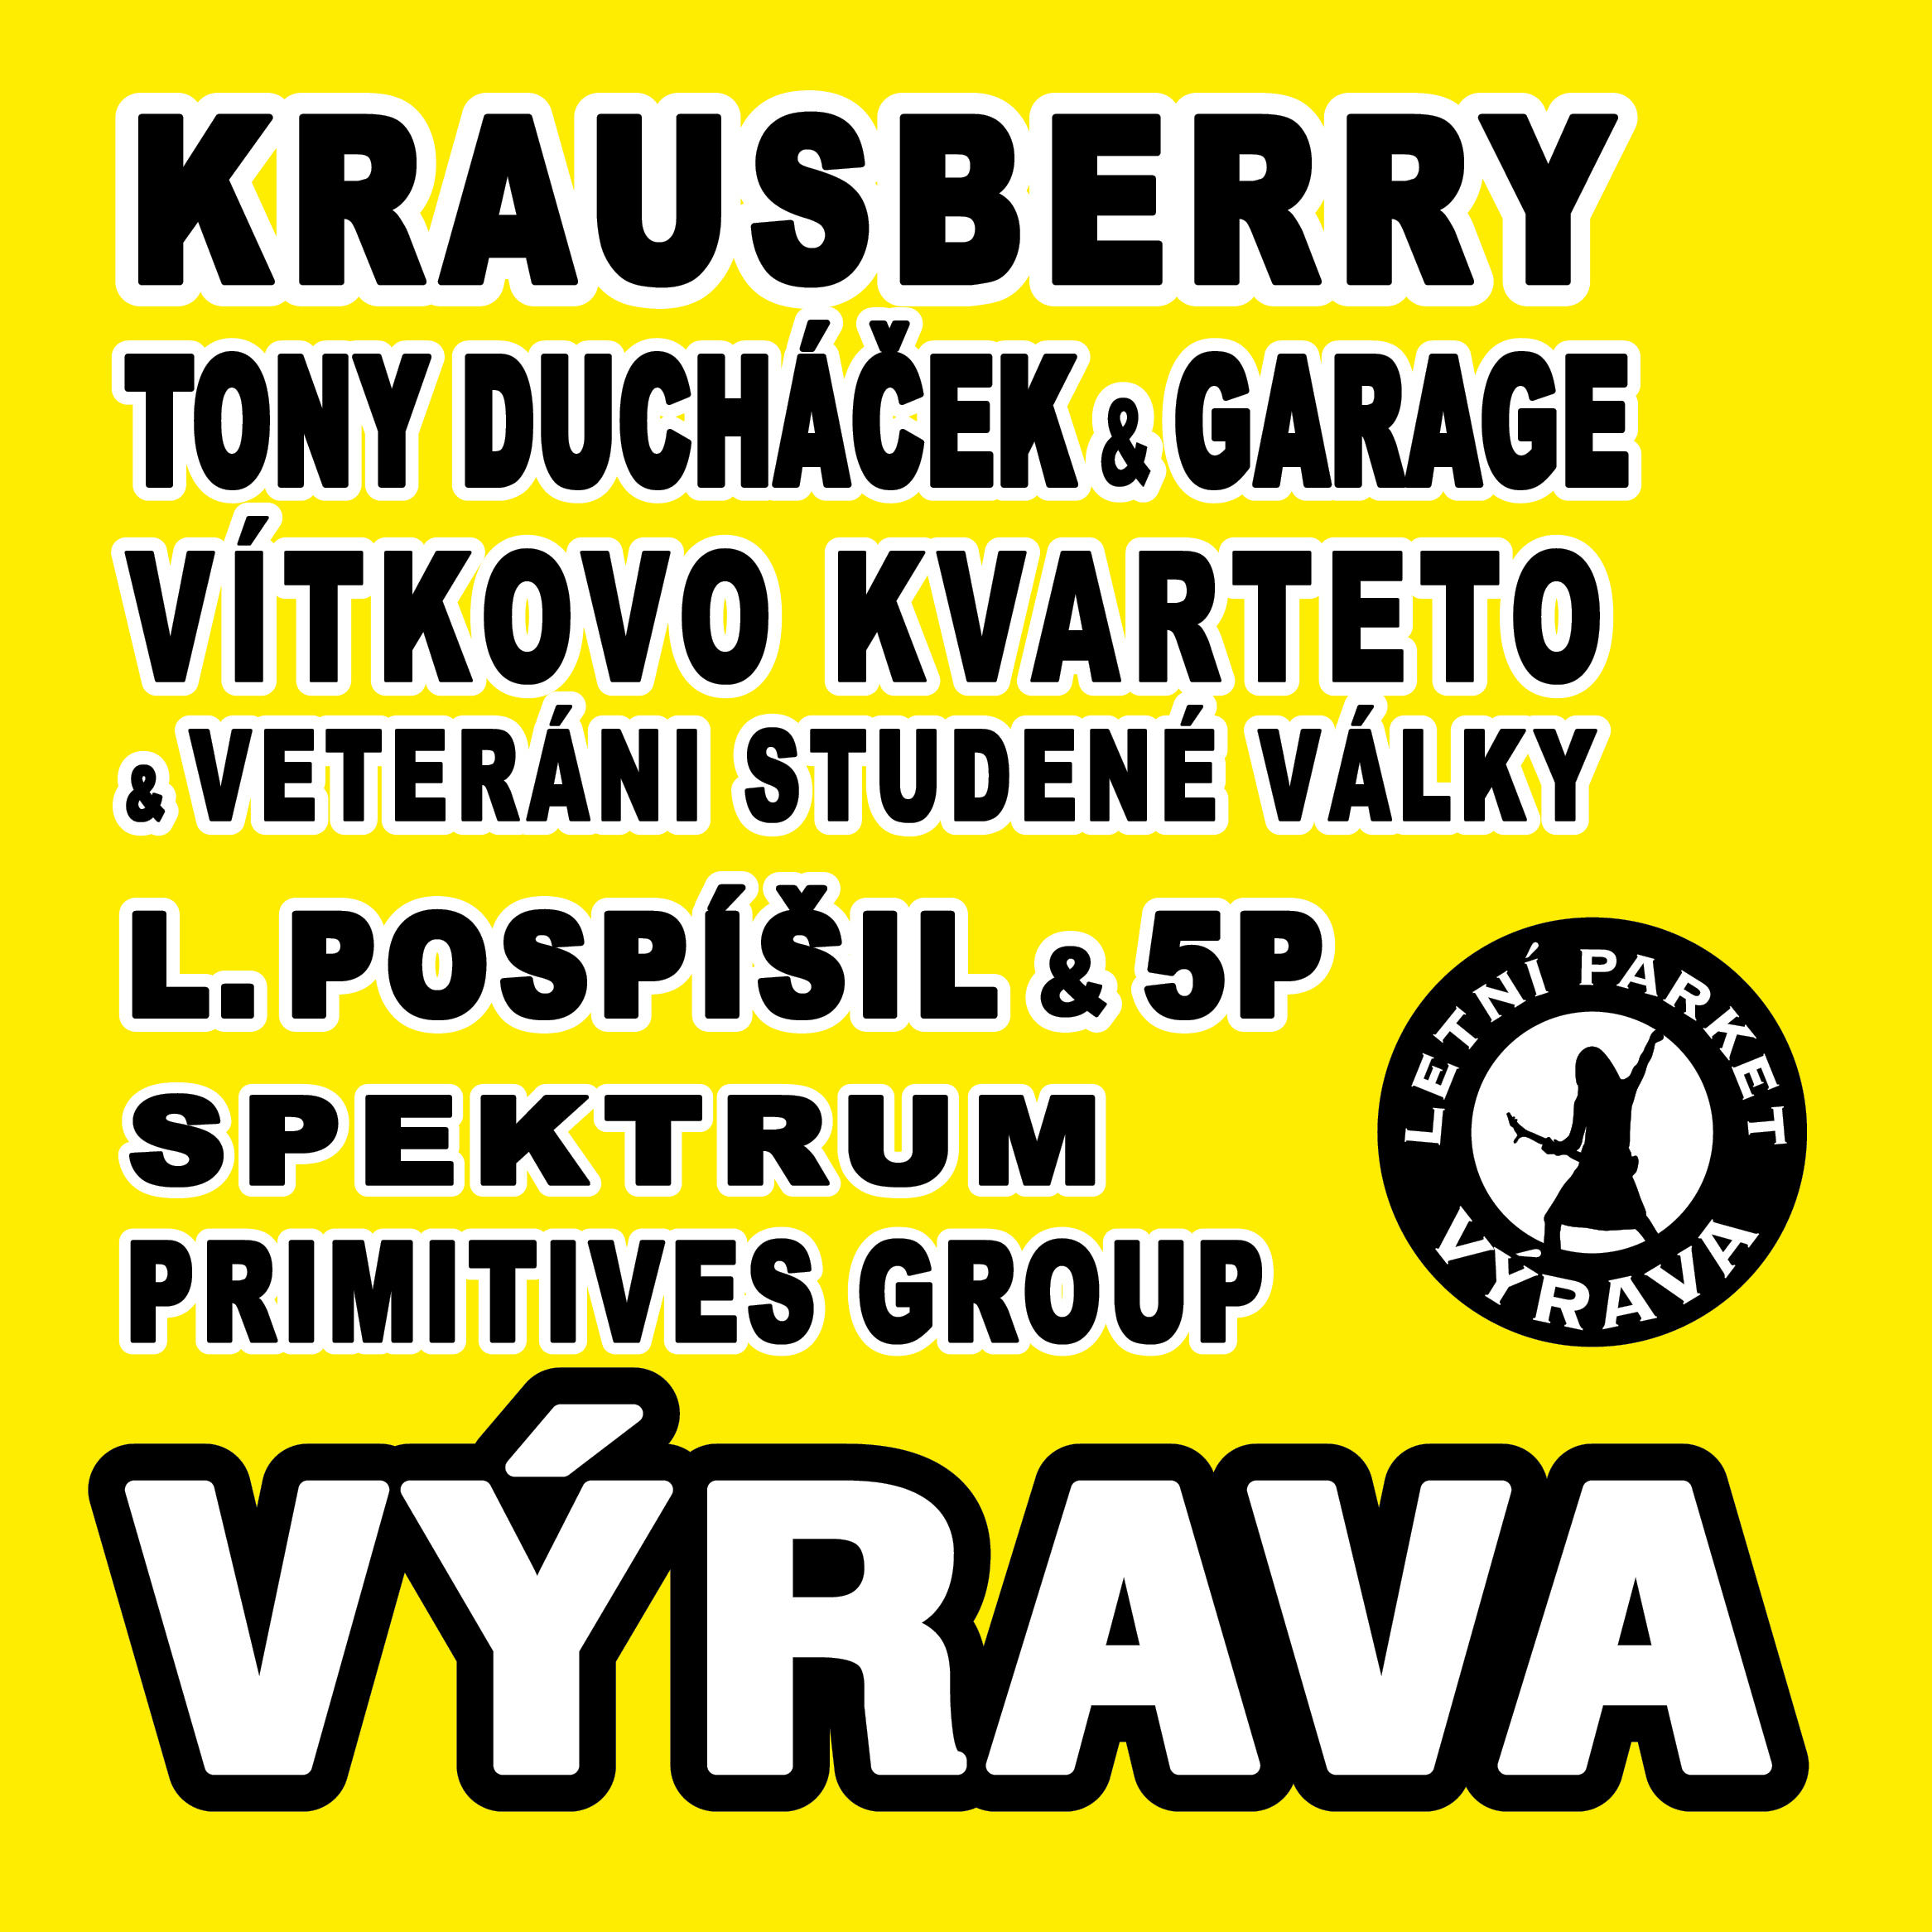 Krausberry, Luboš Pospíšil & 5P, Vítkovo kvarteto & VSV, Tony Ducháček & Garage, Primitives Group, Spektrum